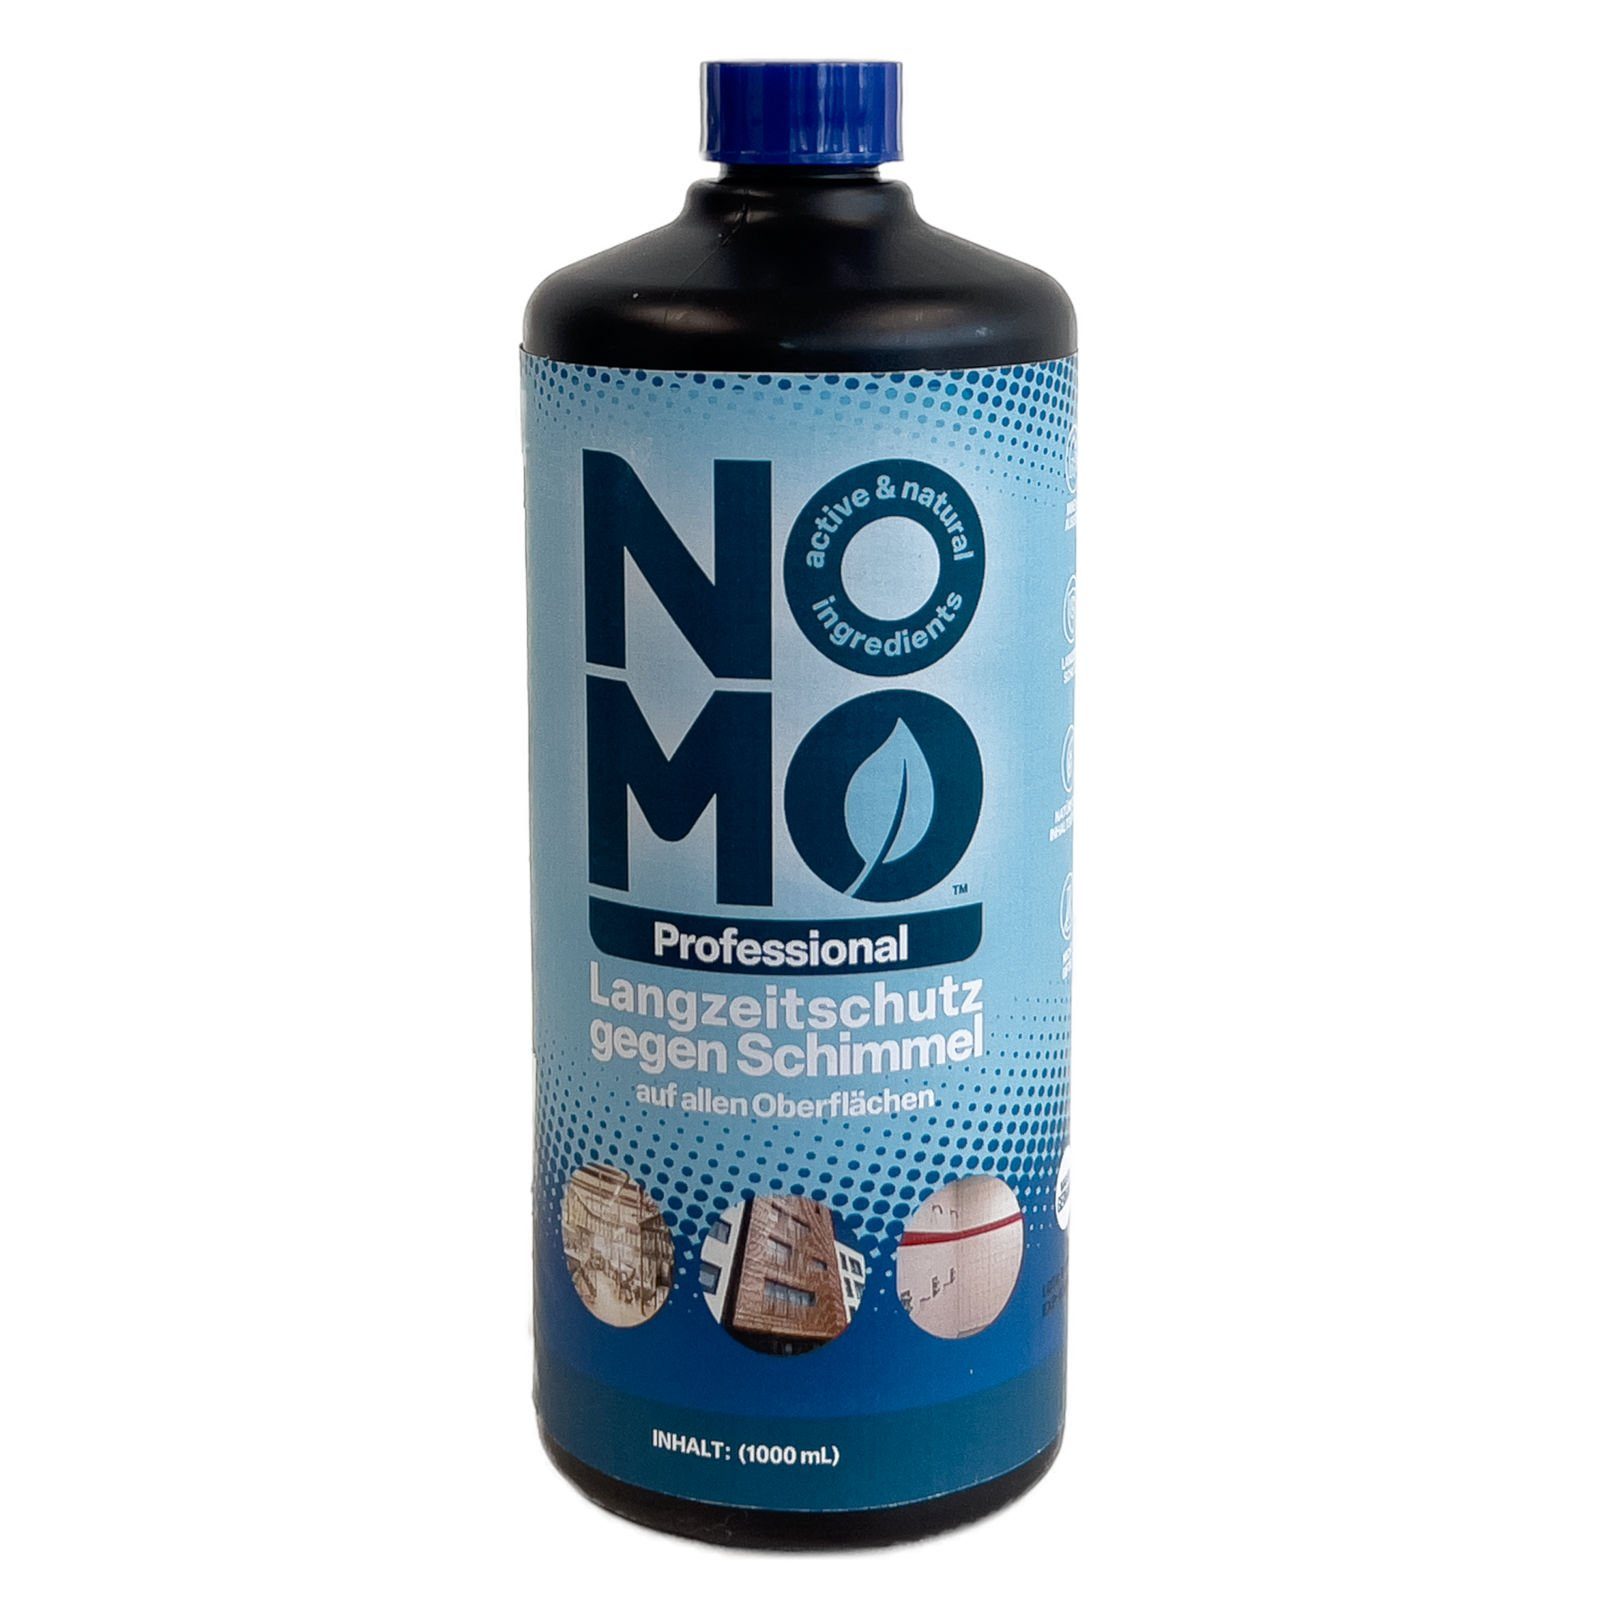 Schimmelentferner 1 Liter Langzeitschutz Schimmel Professional - gegen NOMO